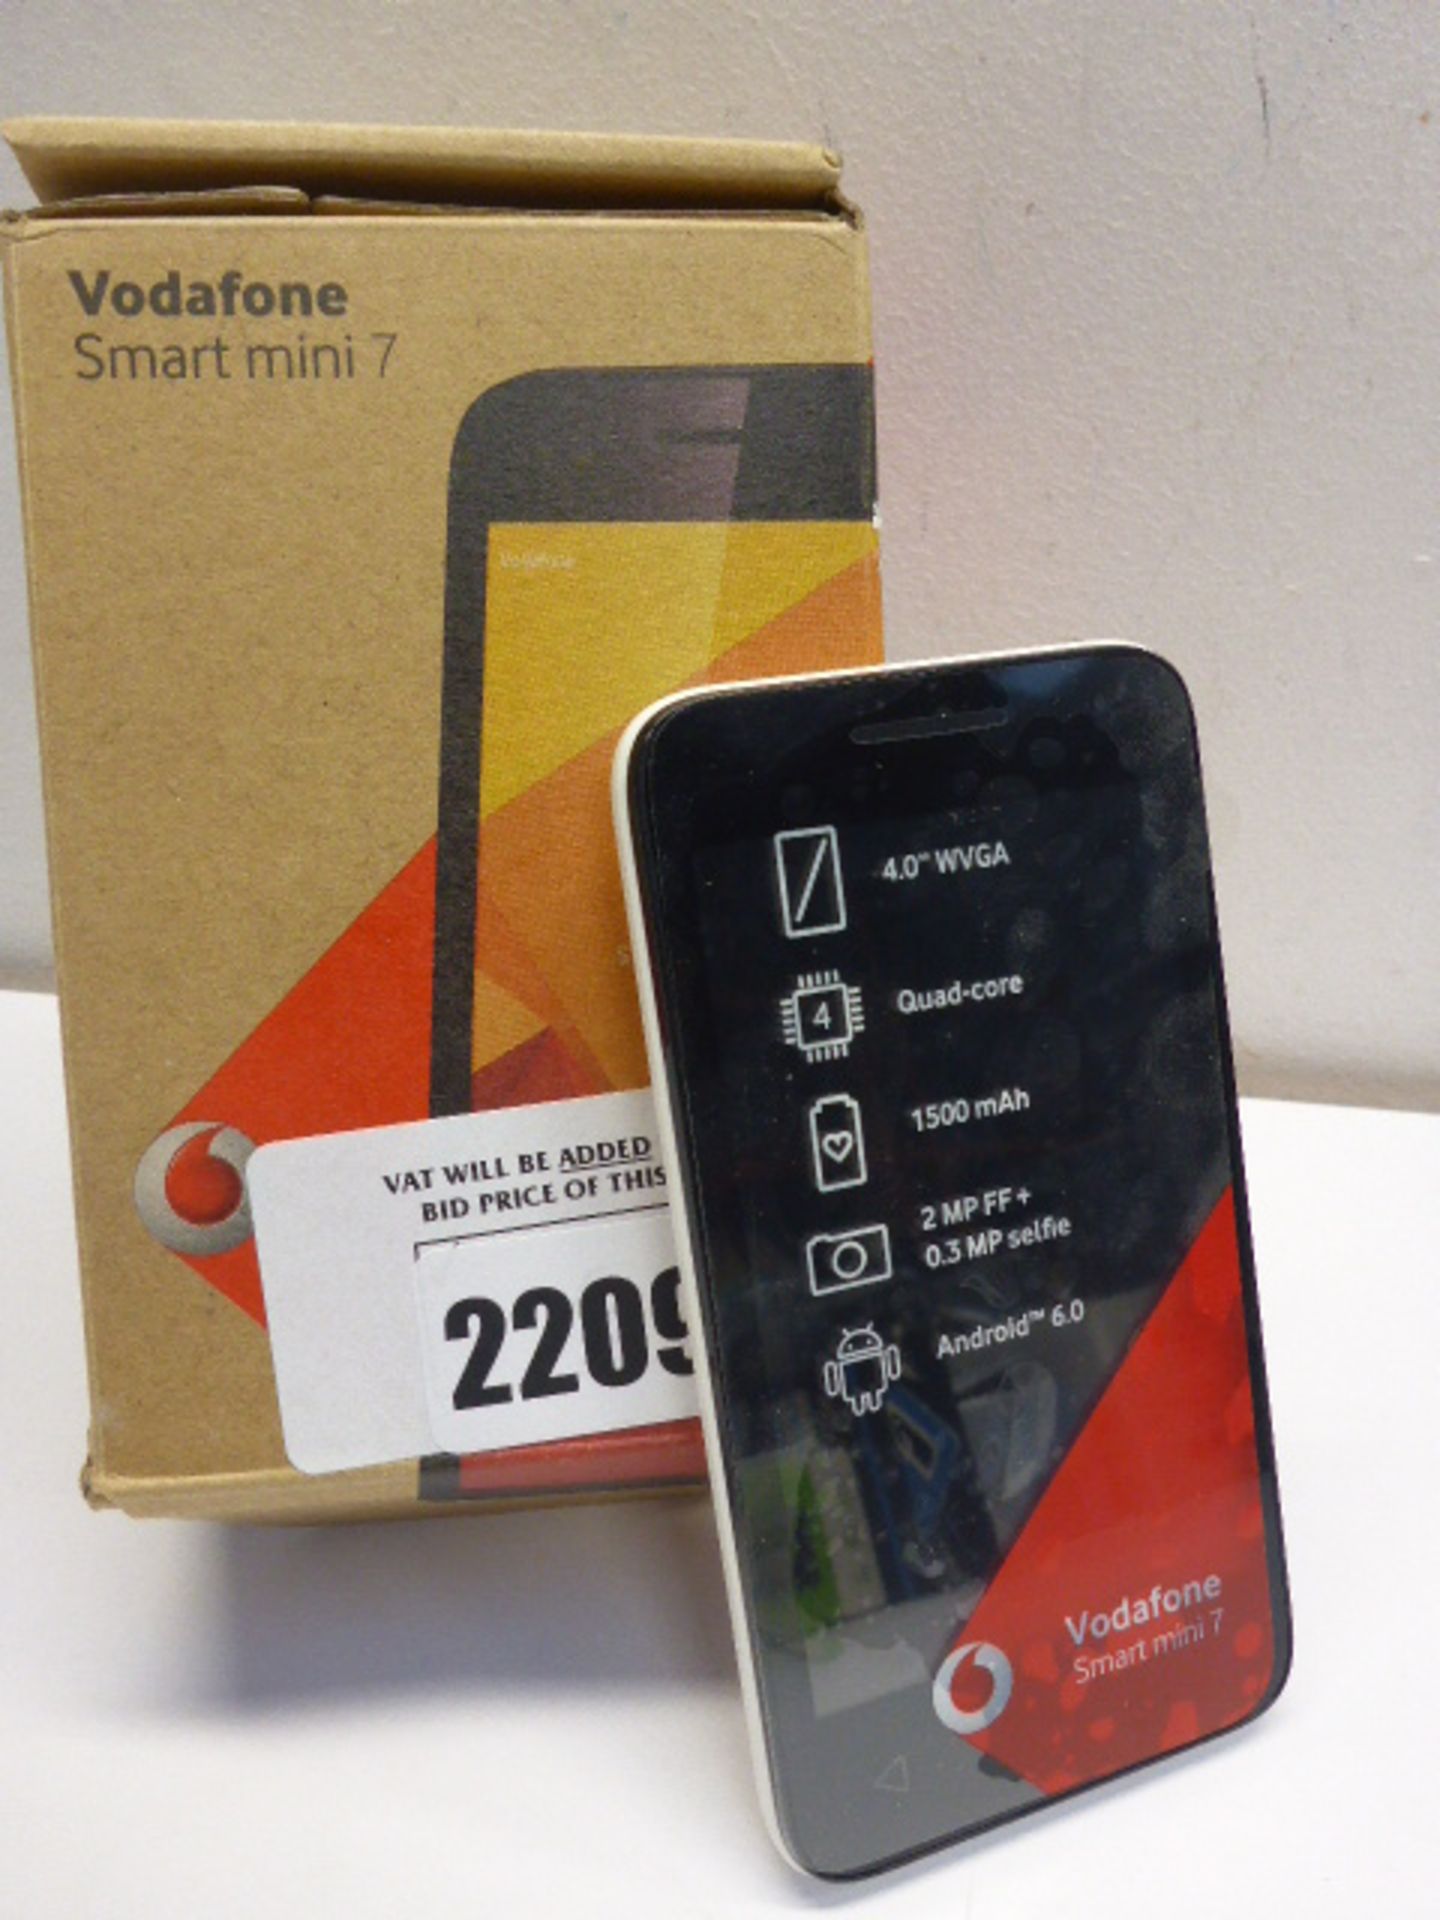 Vodafone Smart Mini 7 mobile, in box.